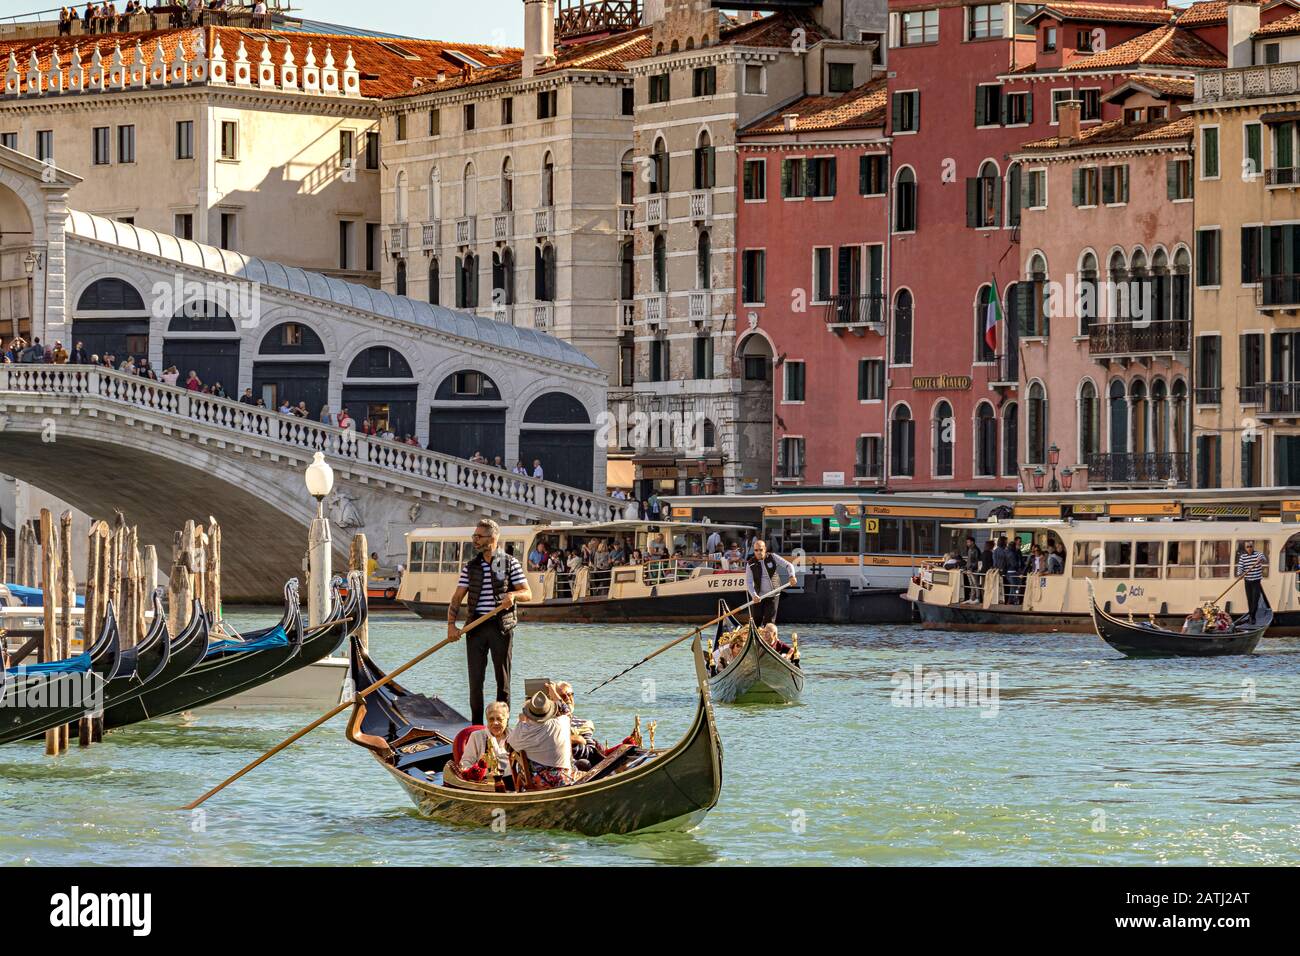 Ein Gondolier, der seine Gondel lenkt und Touristen entlang Des Canal Grande nahe Der Rialto-Brücke, Venedig, Italien, führt Stockfoto